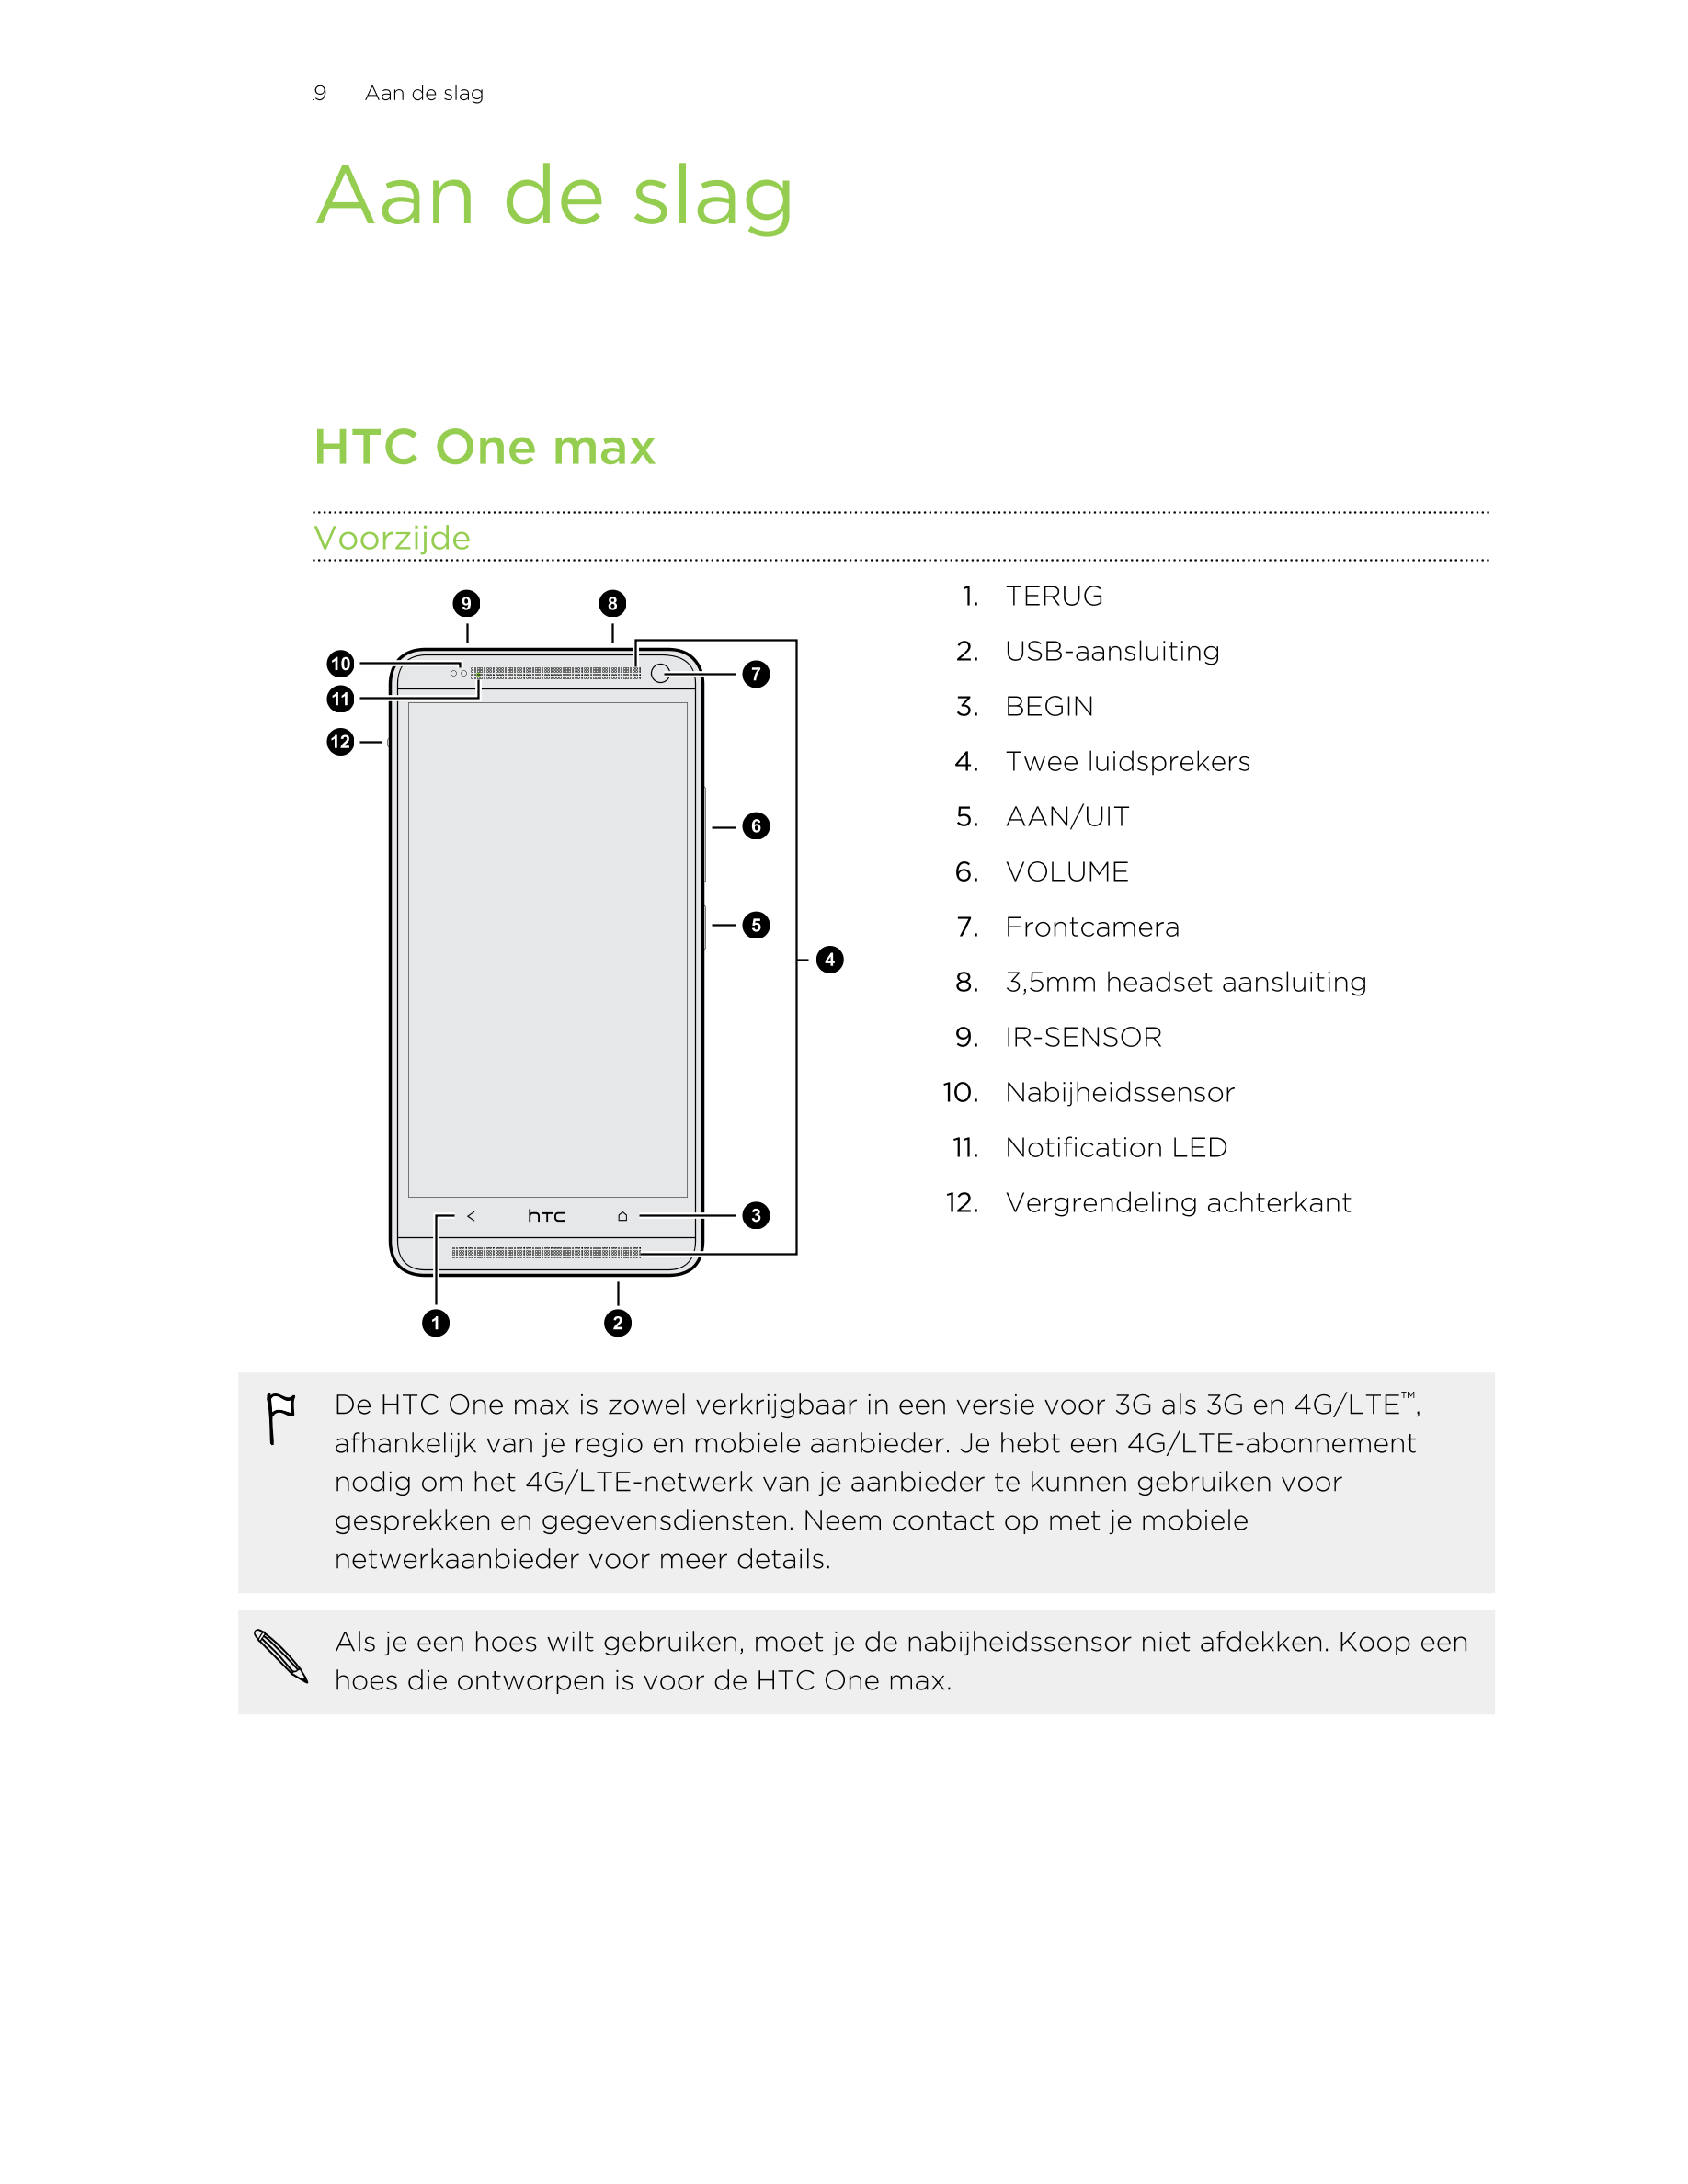 9      Aan de slag
Aan de slag
HTC One max
Voorzijde
1. TERUG
2. USB-aansluiting
3. BEGIN
4. Twee luidsprekers
5. AAN/UIT
6. VOL